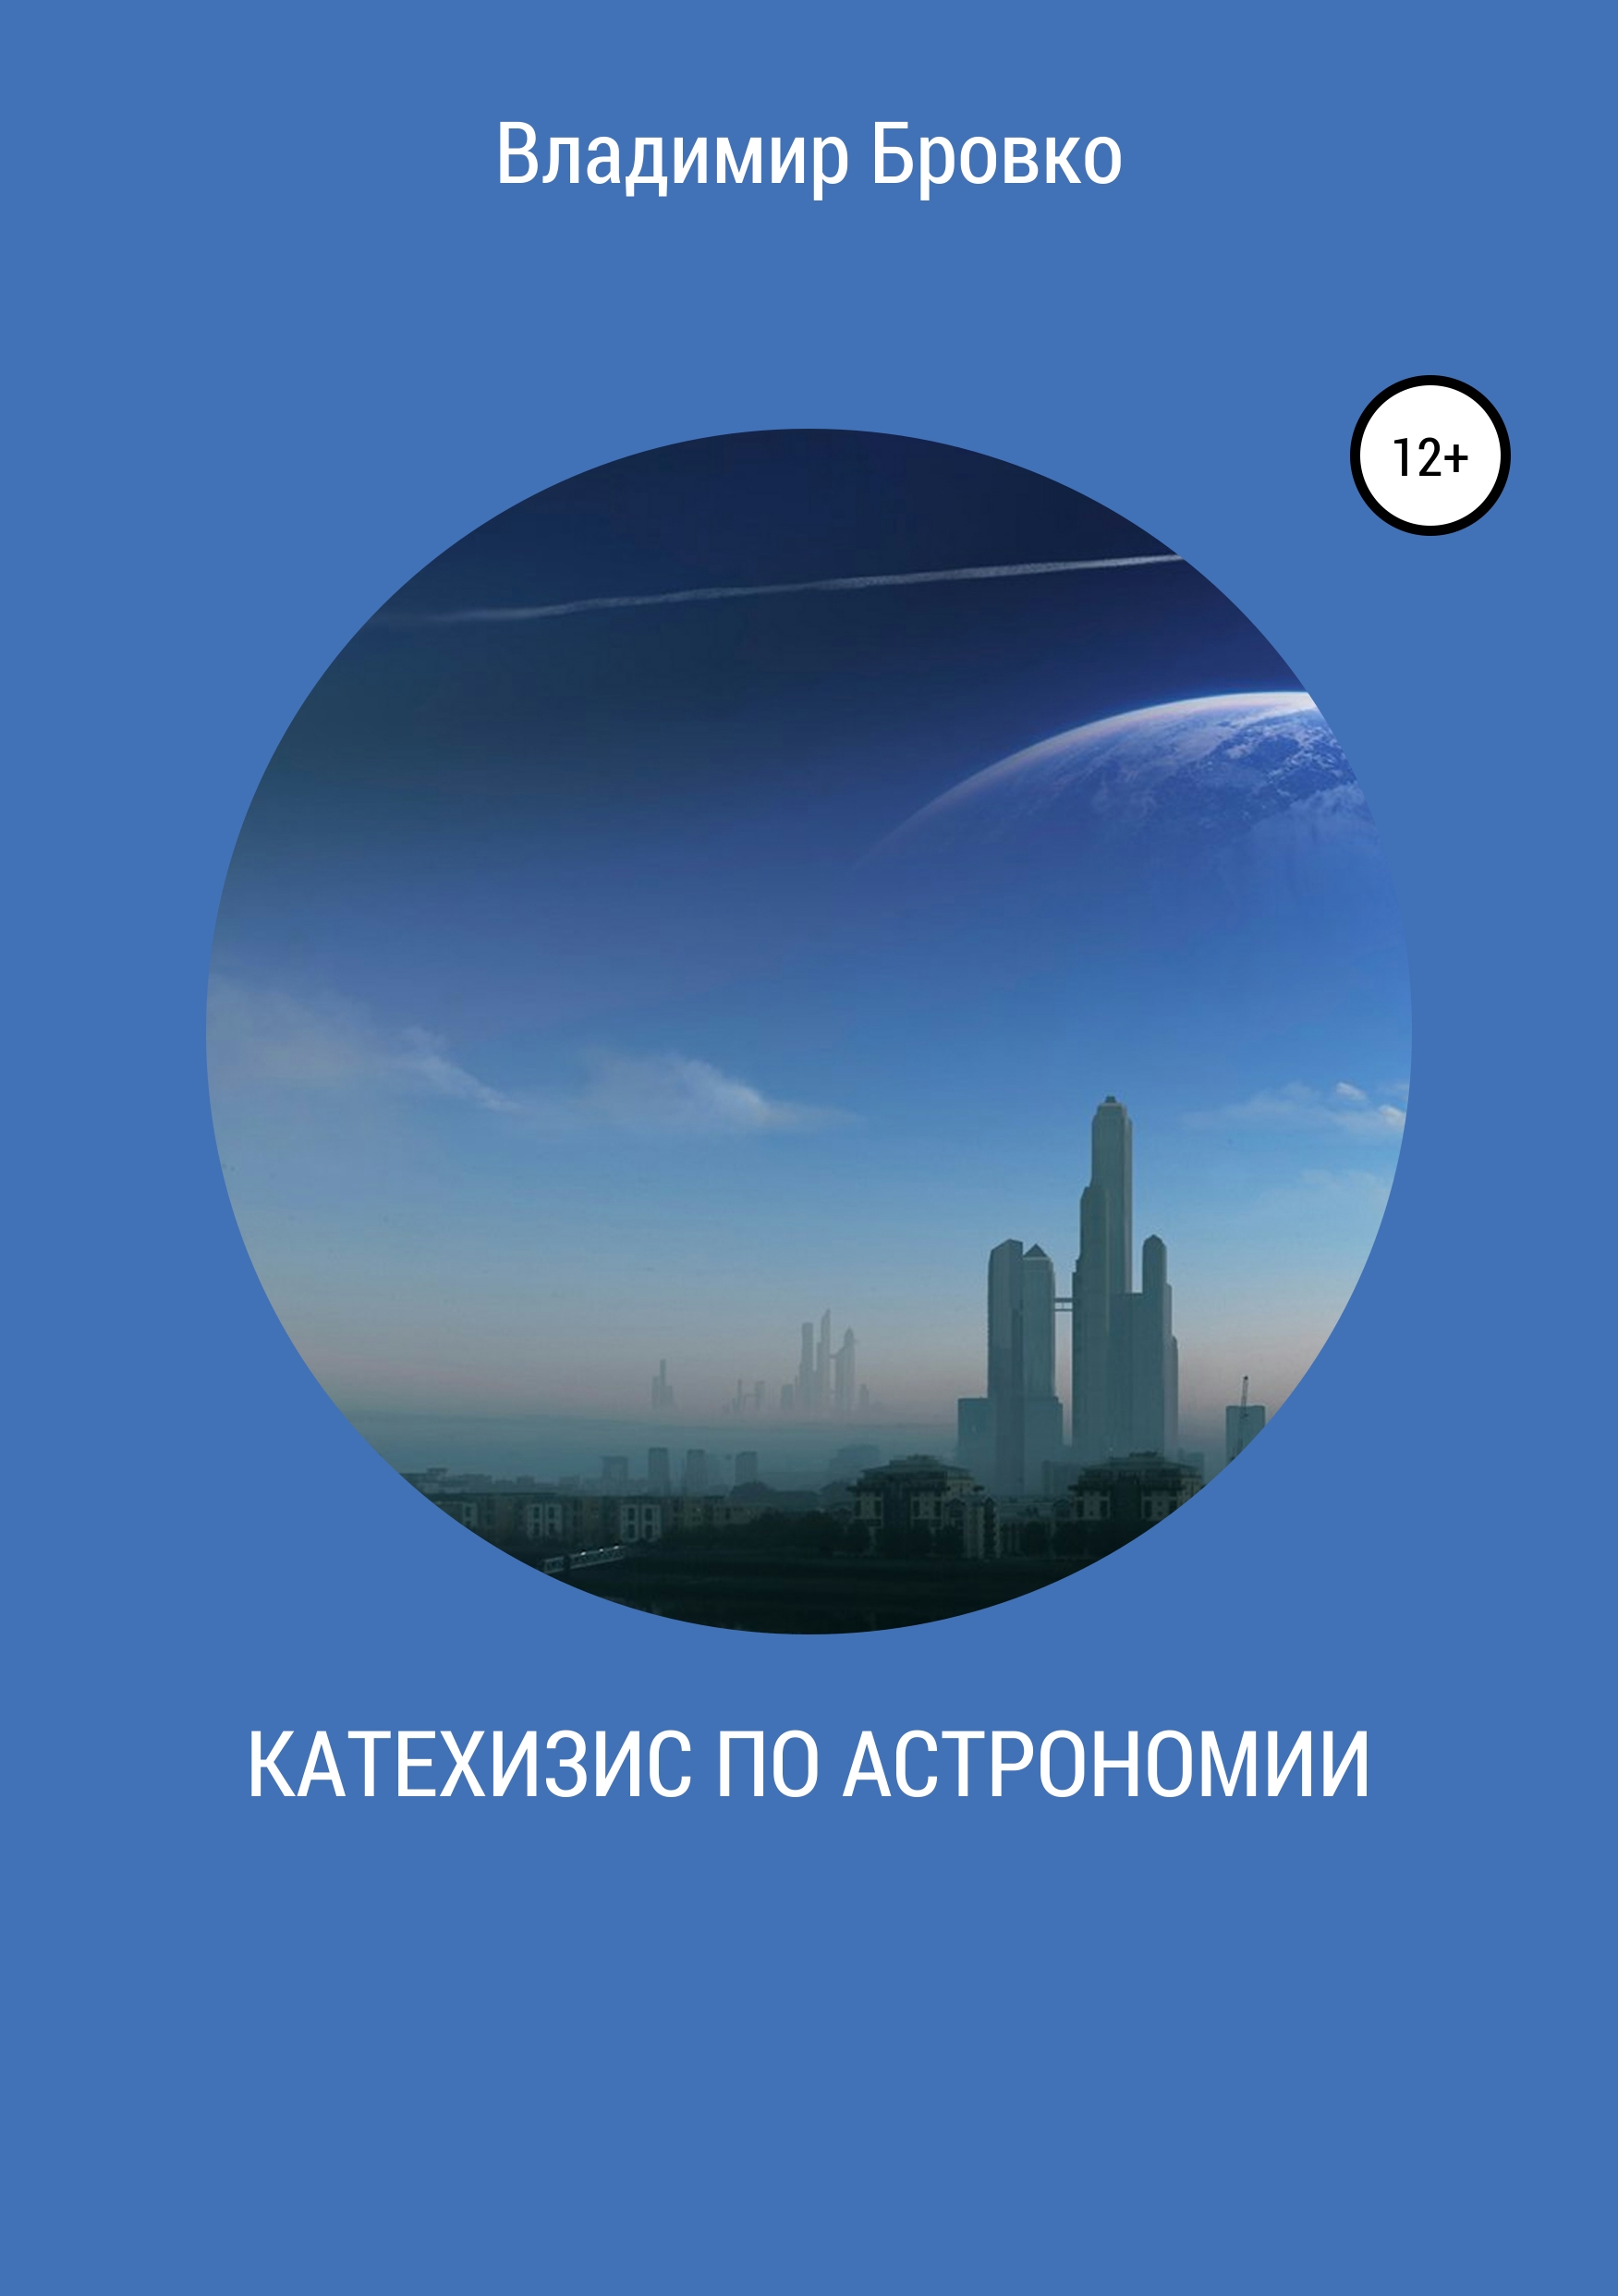 Книга Катехизис по астрономии из серии , созданная Владимир Бровко, может относится к жанру Физика. Стоимость книги Катехизис по астрономии  с идентификатором 42540758 составляет 0 руб.